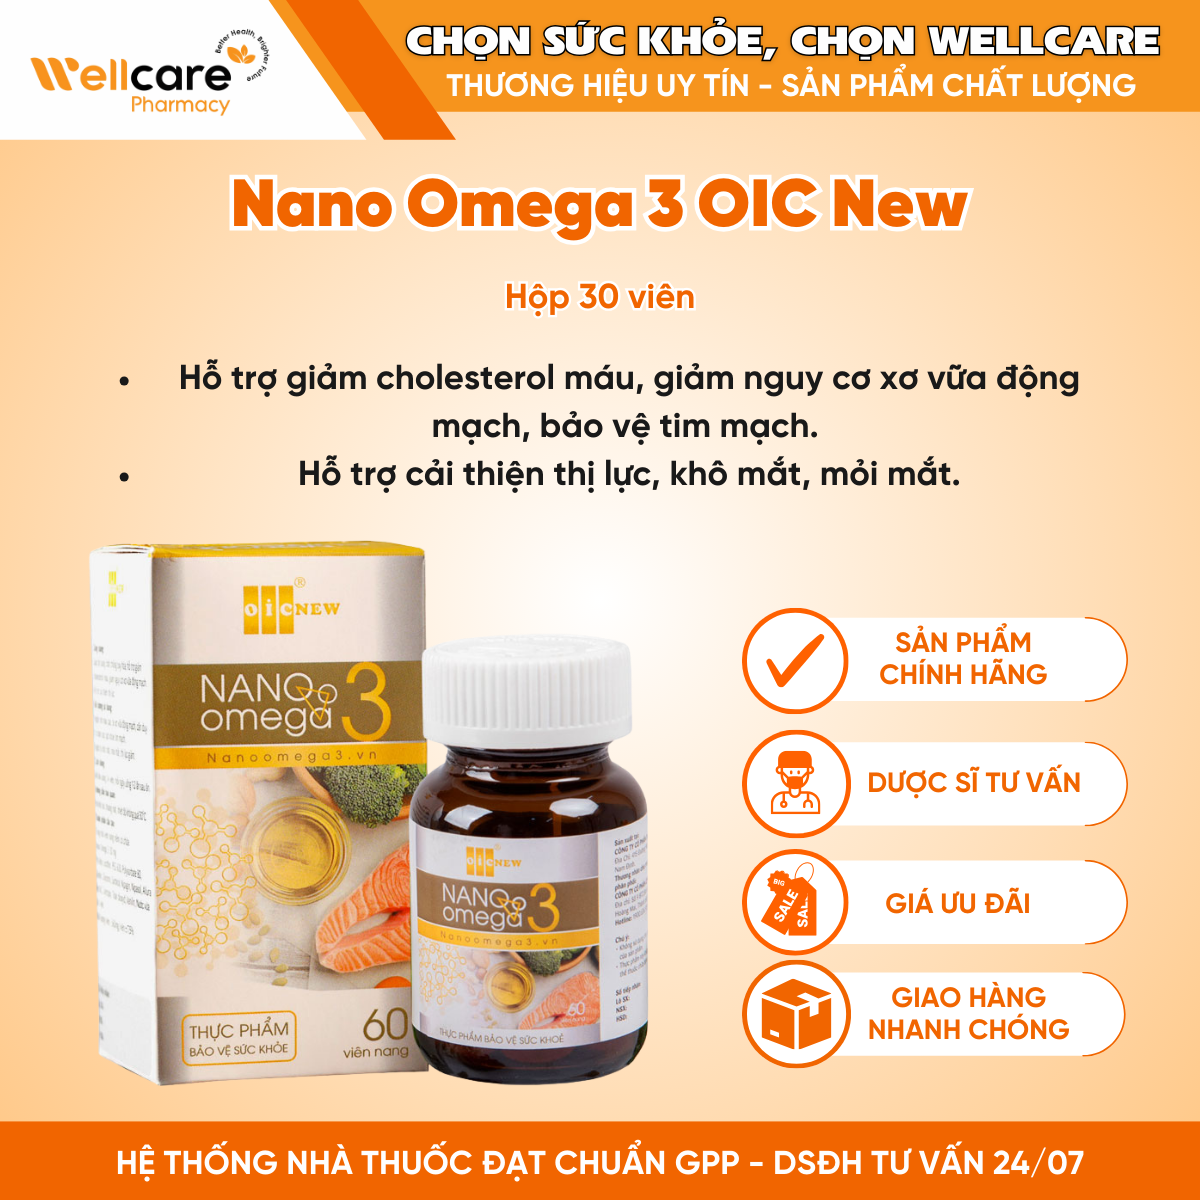 Nano Omega 3 OIC New – Hỗ trợ giảm cholesterol máu, hỗ trợ cải thiện thị lực (Hộp 30 viên)